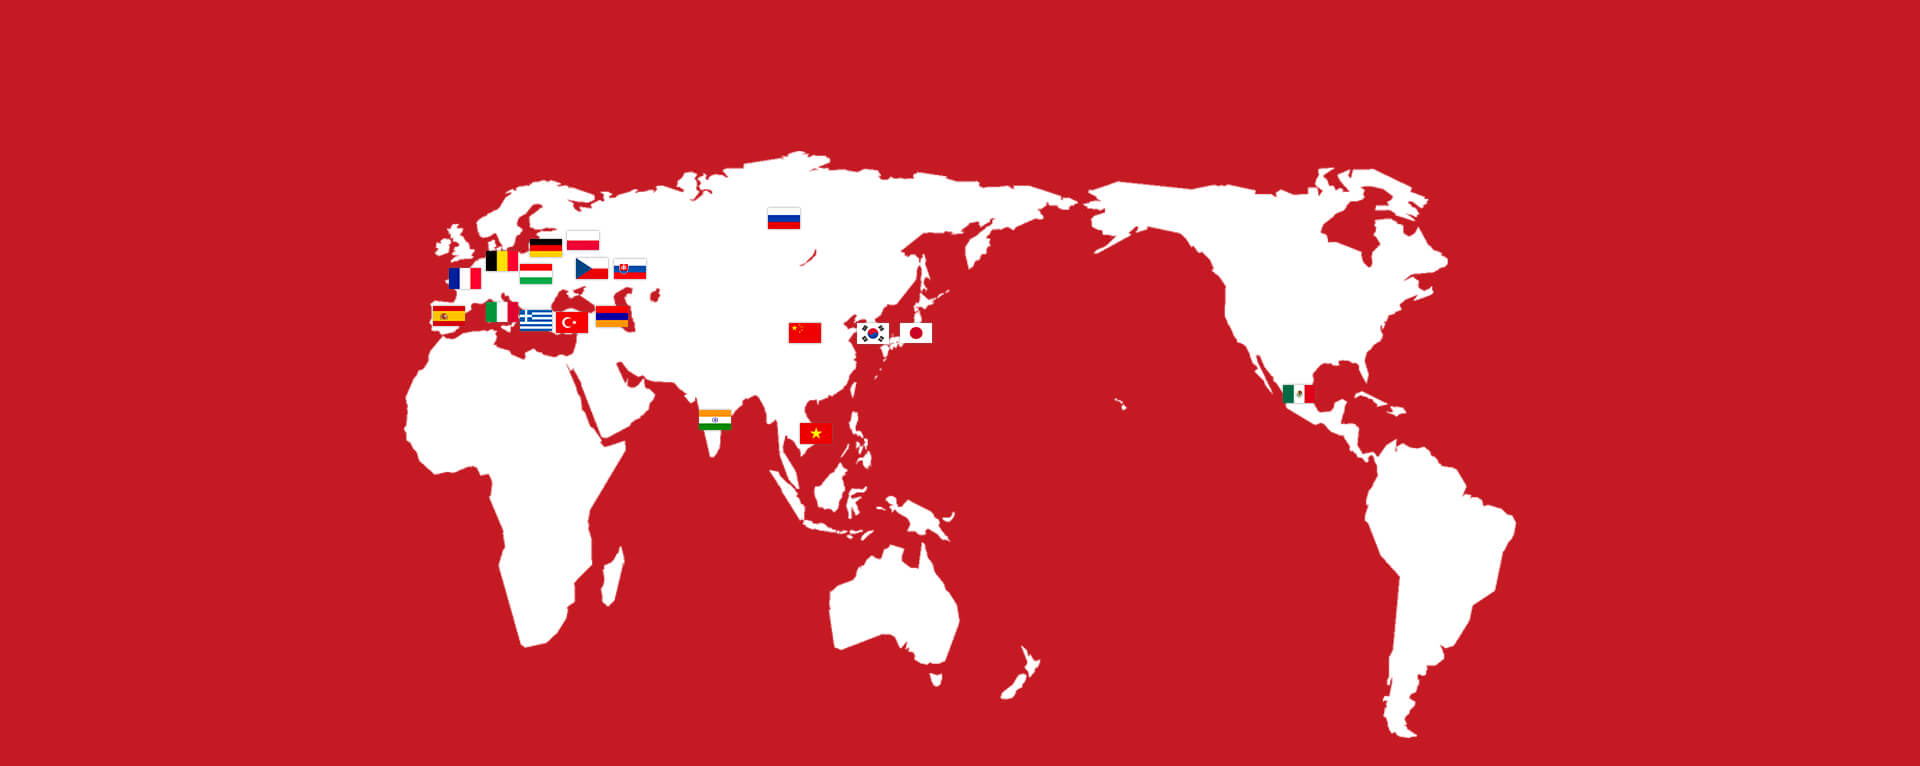 『おとなの事情』 世界リメイクマップ